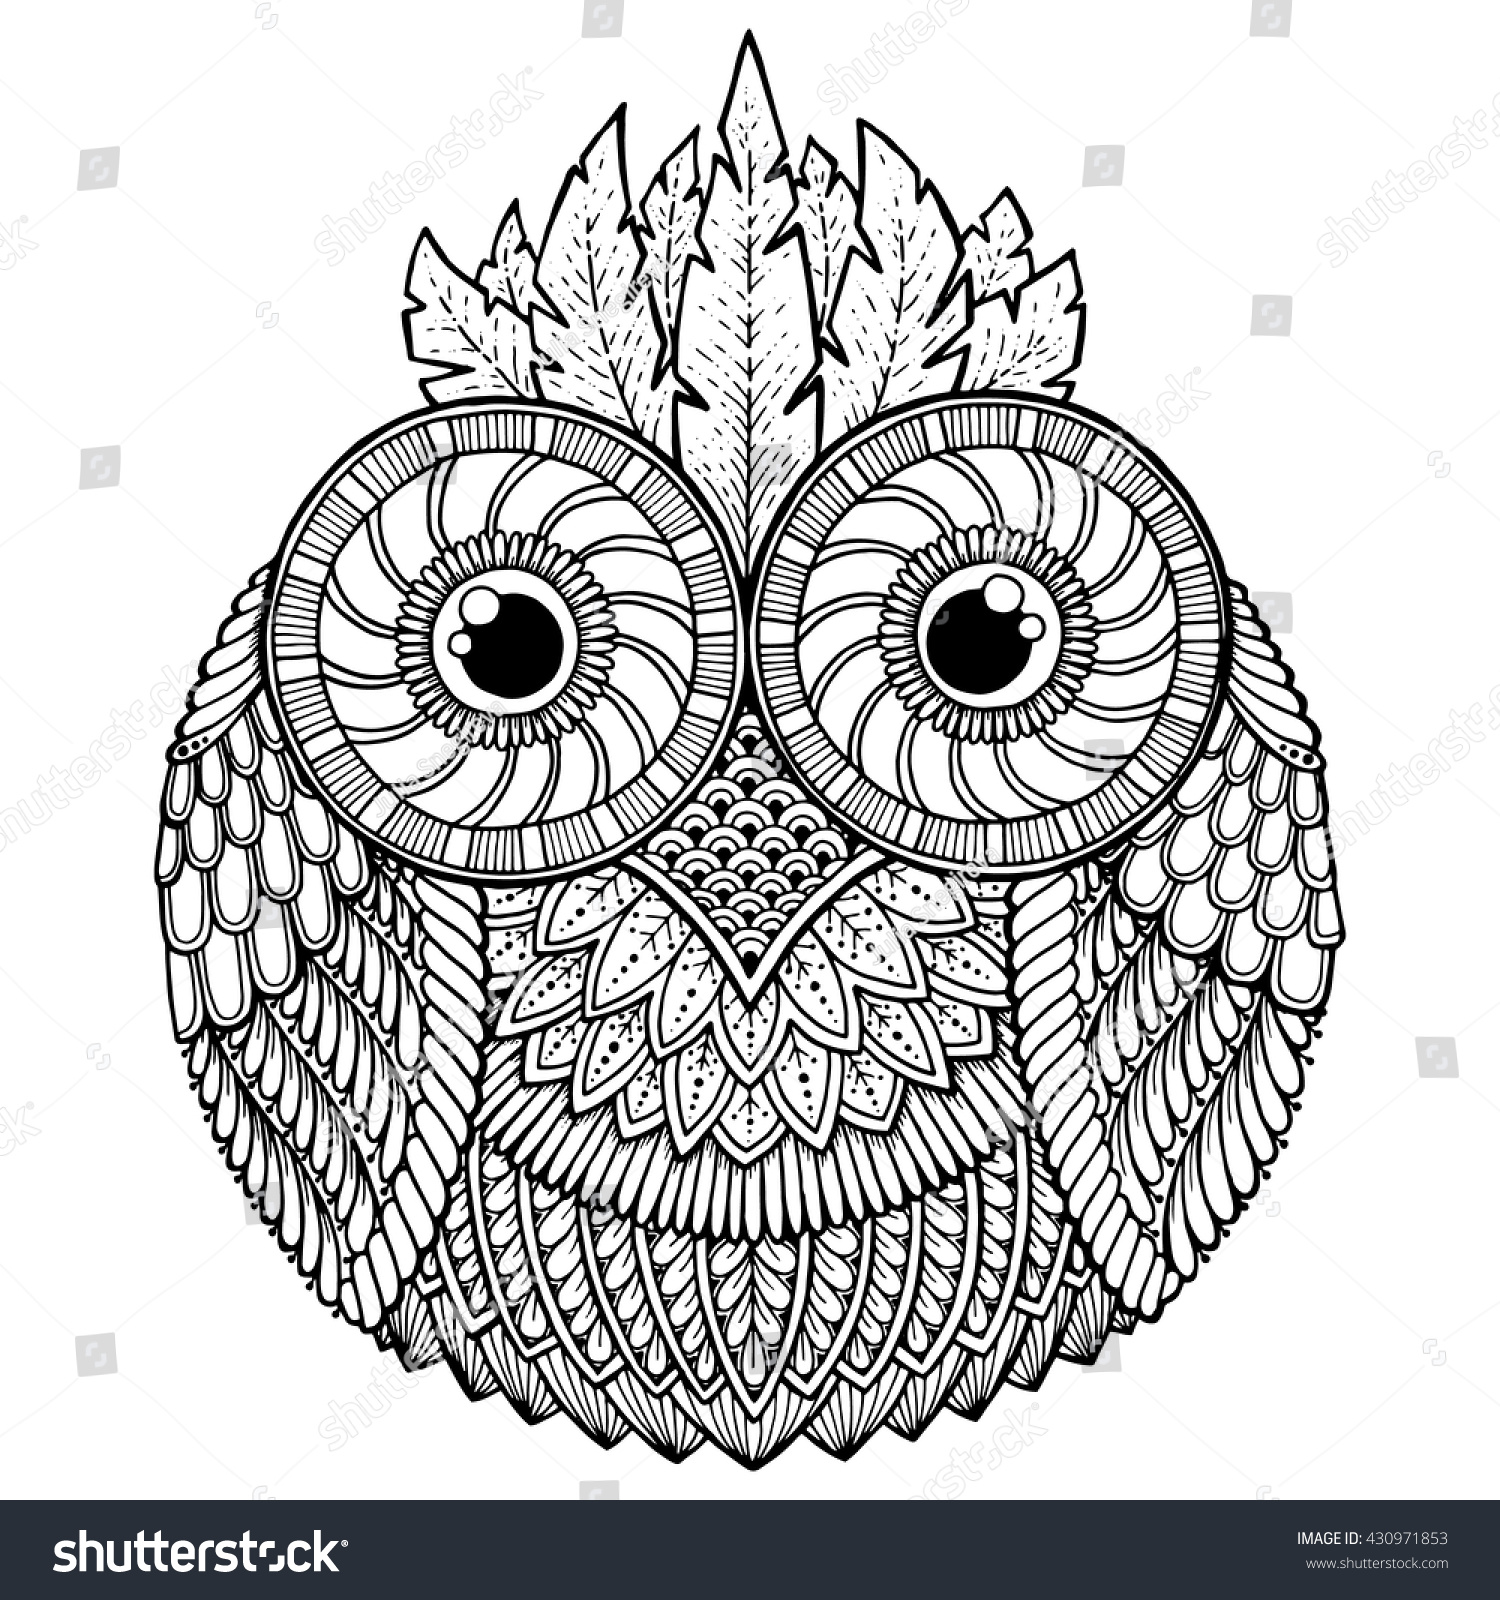 Birds Theme Owl Black White Mandala Stock Vector 430971853 - Shutterstock